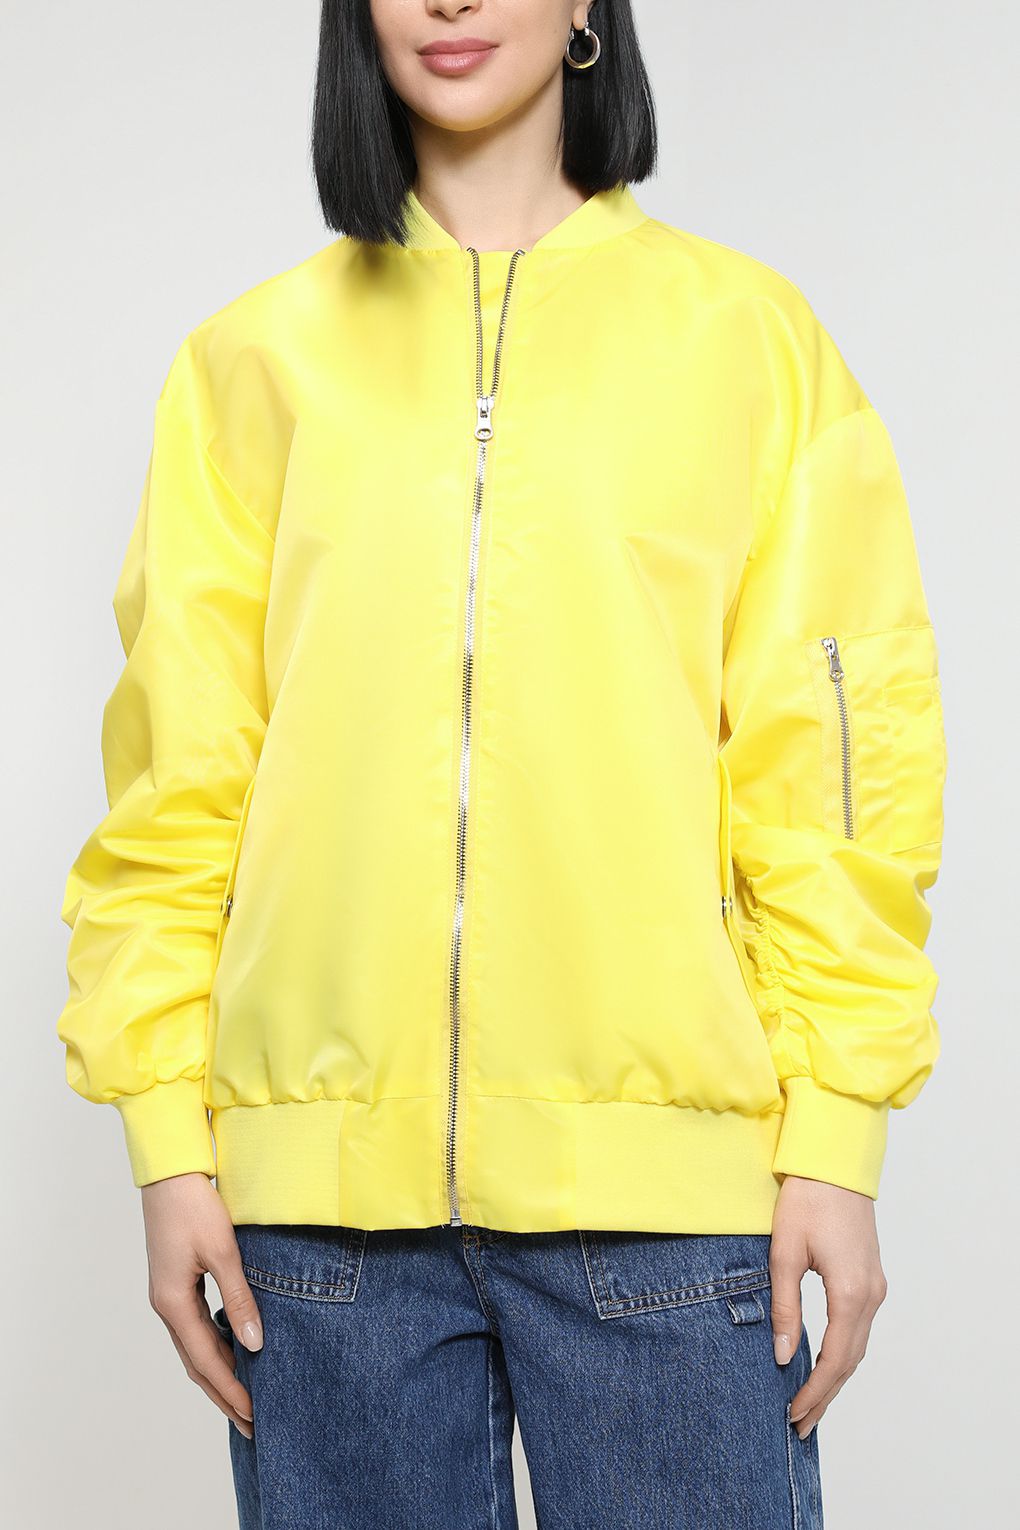 Куртка женская Belucci BL23019241 желтая XL